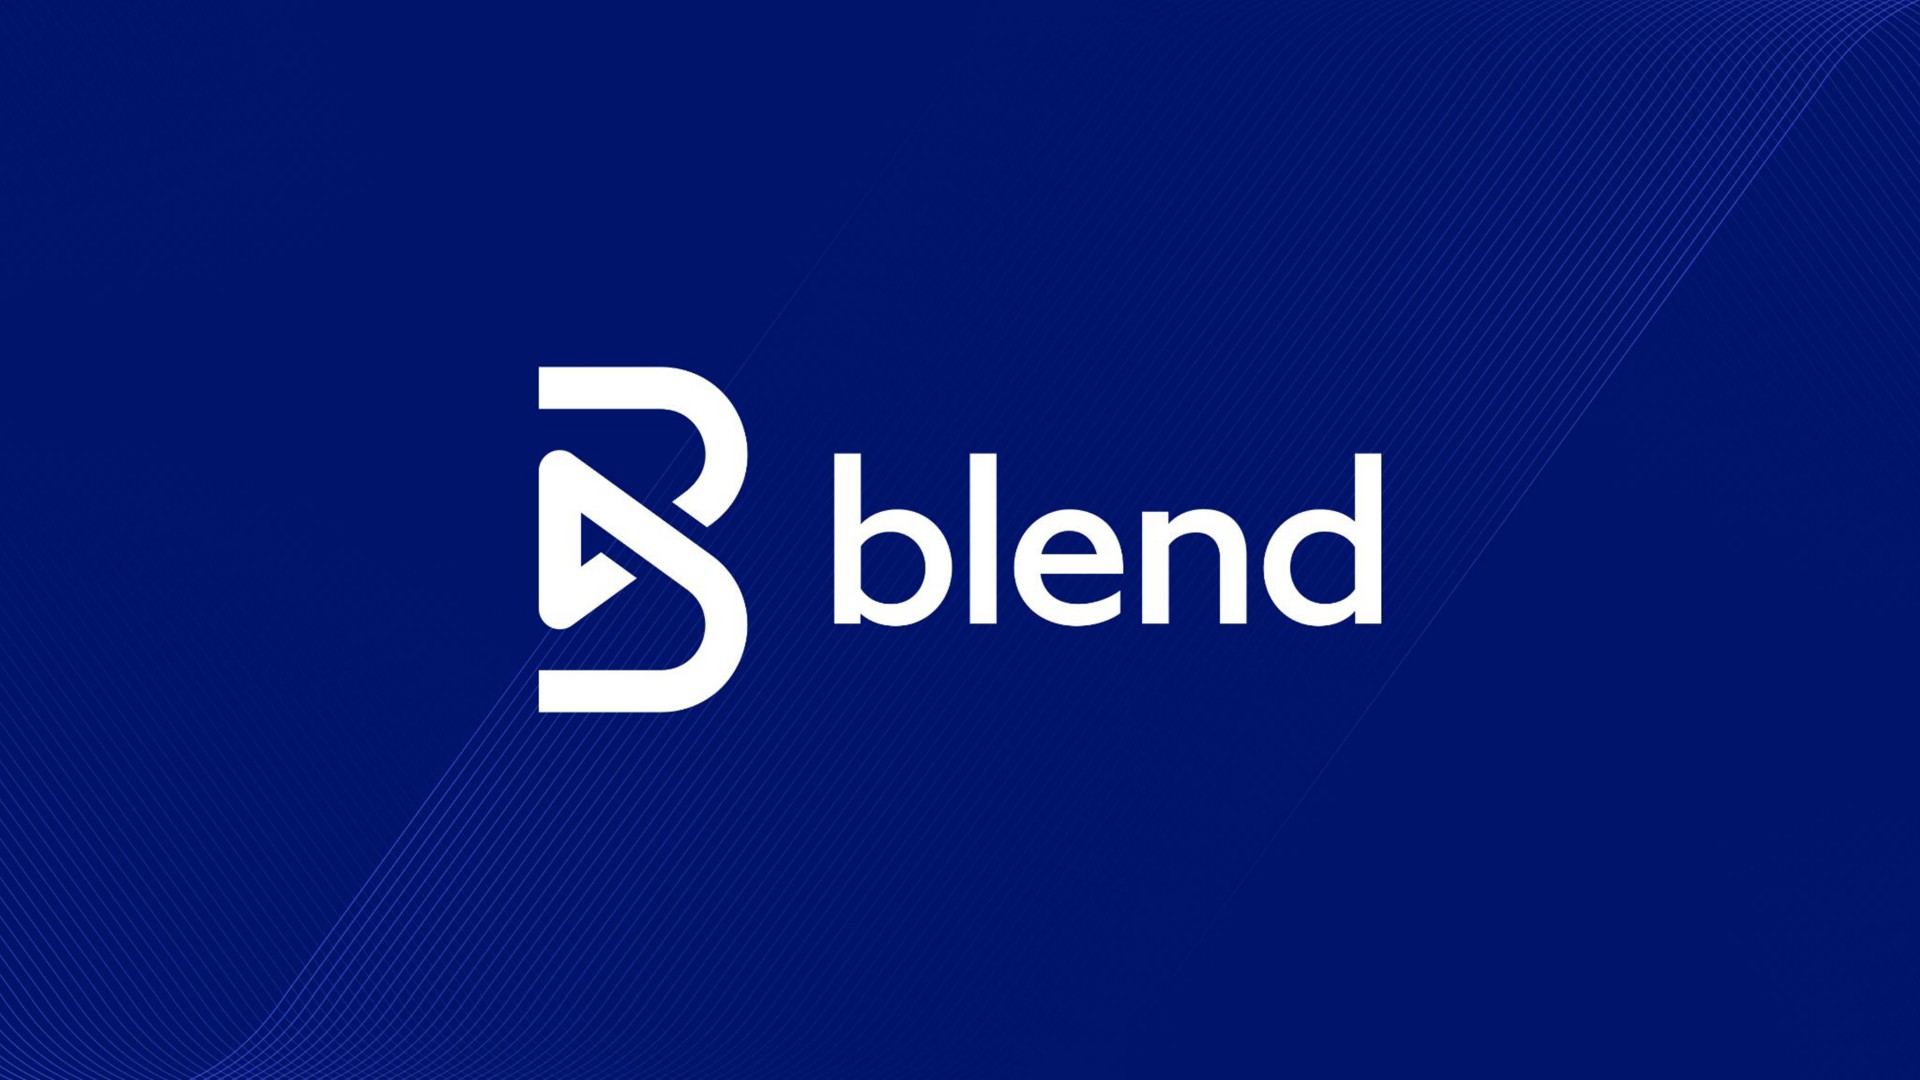 blend | Blend